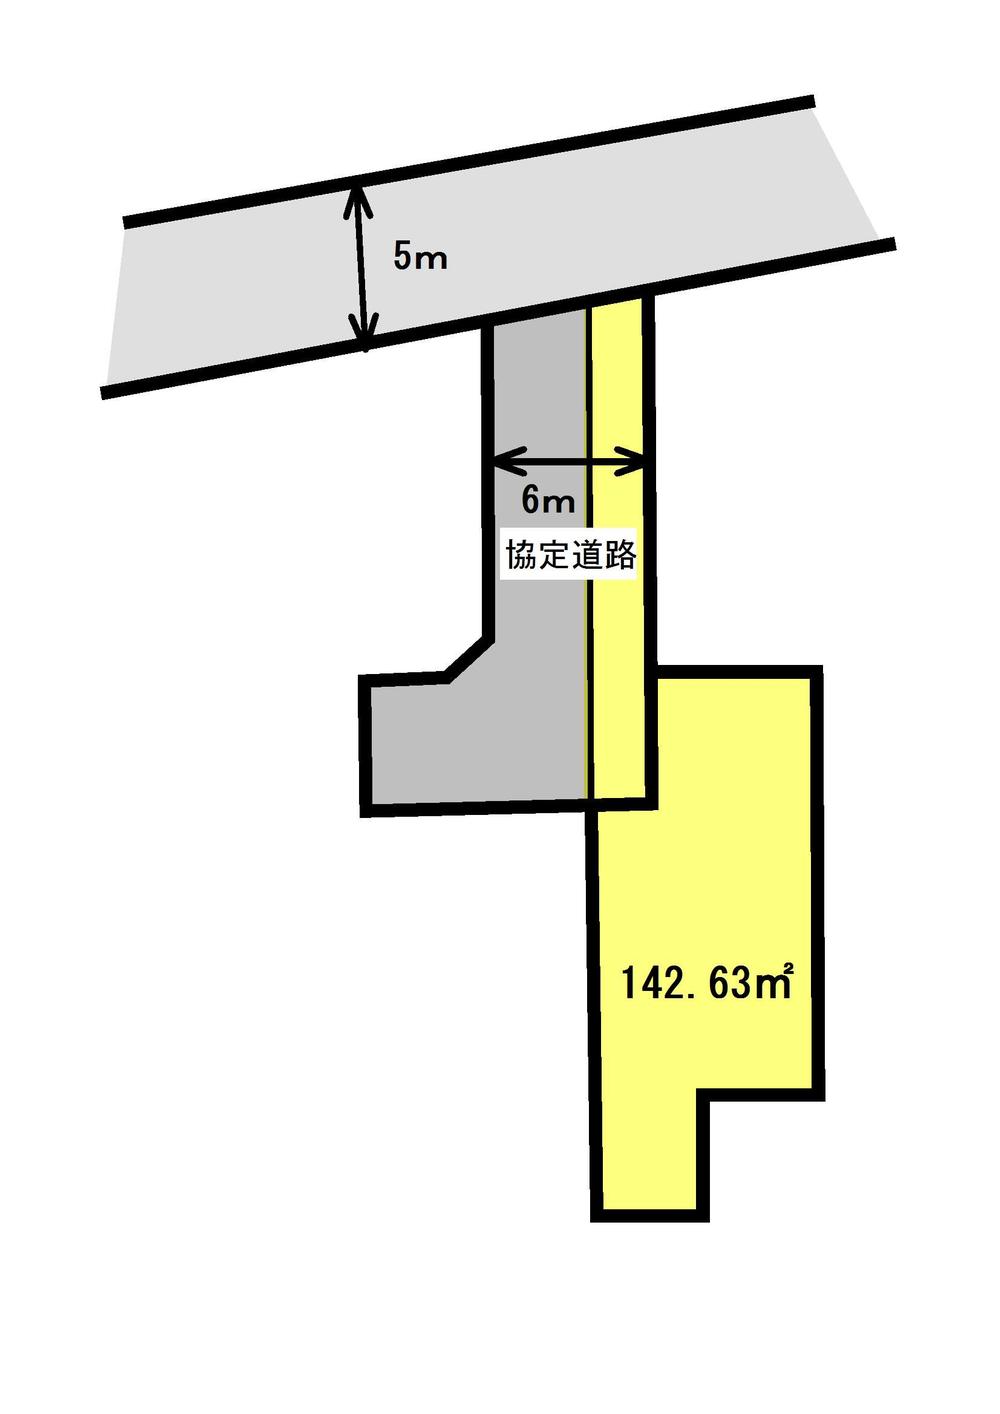 Compartment figure. 24,800,000 yen, 4LDK, Land area 182.59 sq m , Building area 99.36 sq m